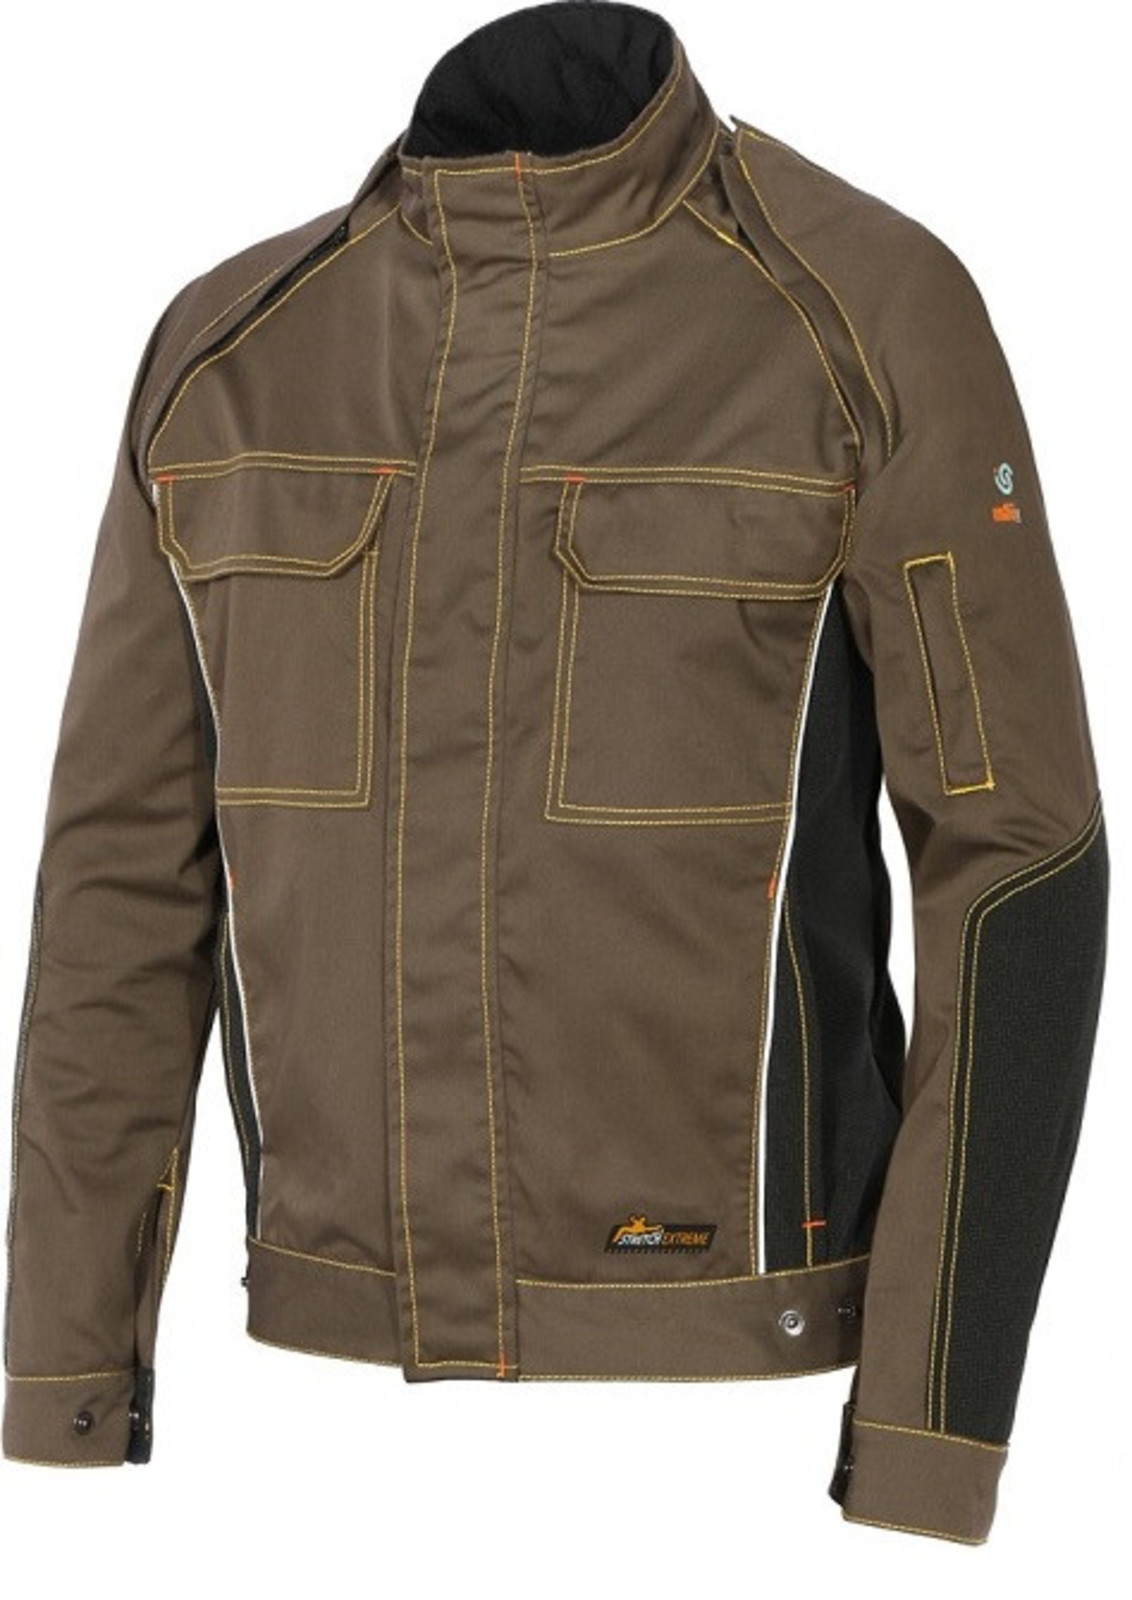 Strečová montérková bunda  ISSA Stretch Extreme 2v1 - veľkosť: XXL, farba: khaki